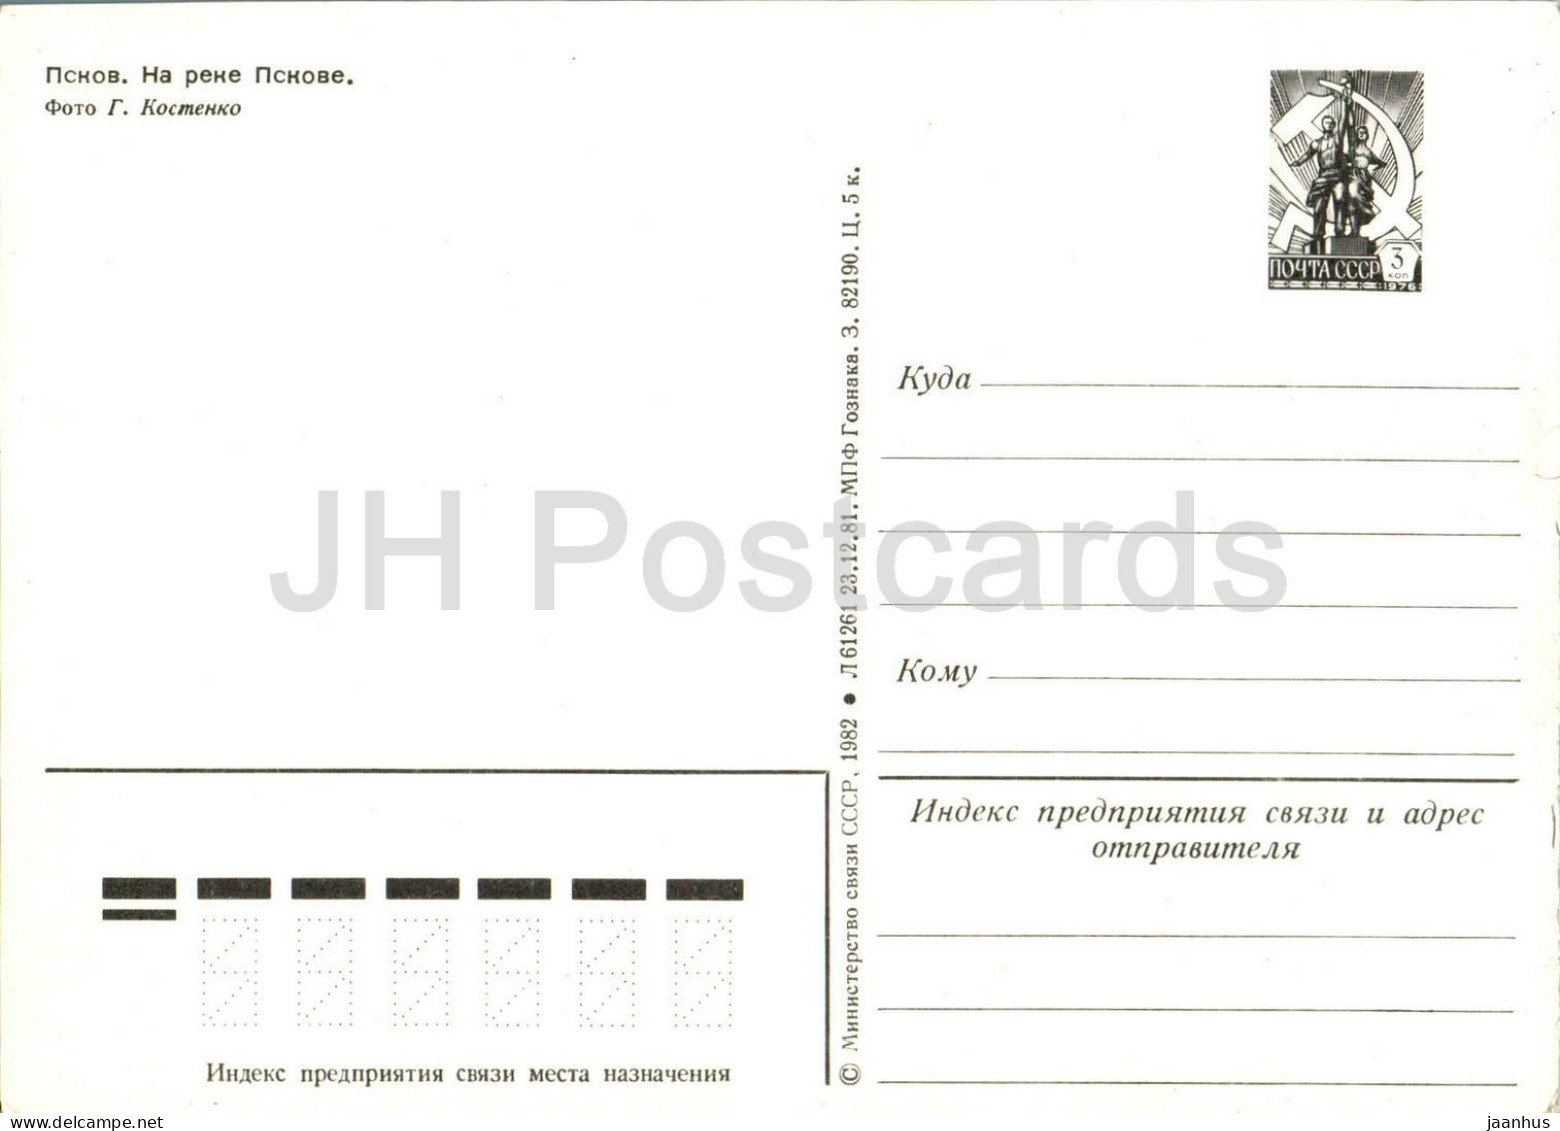 Pskov - Pskov River - Postal Stationery - 1982 - Russia USSR - Unused - Russland